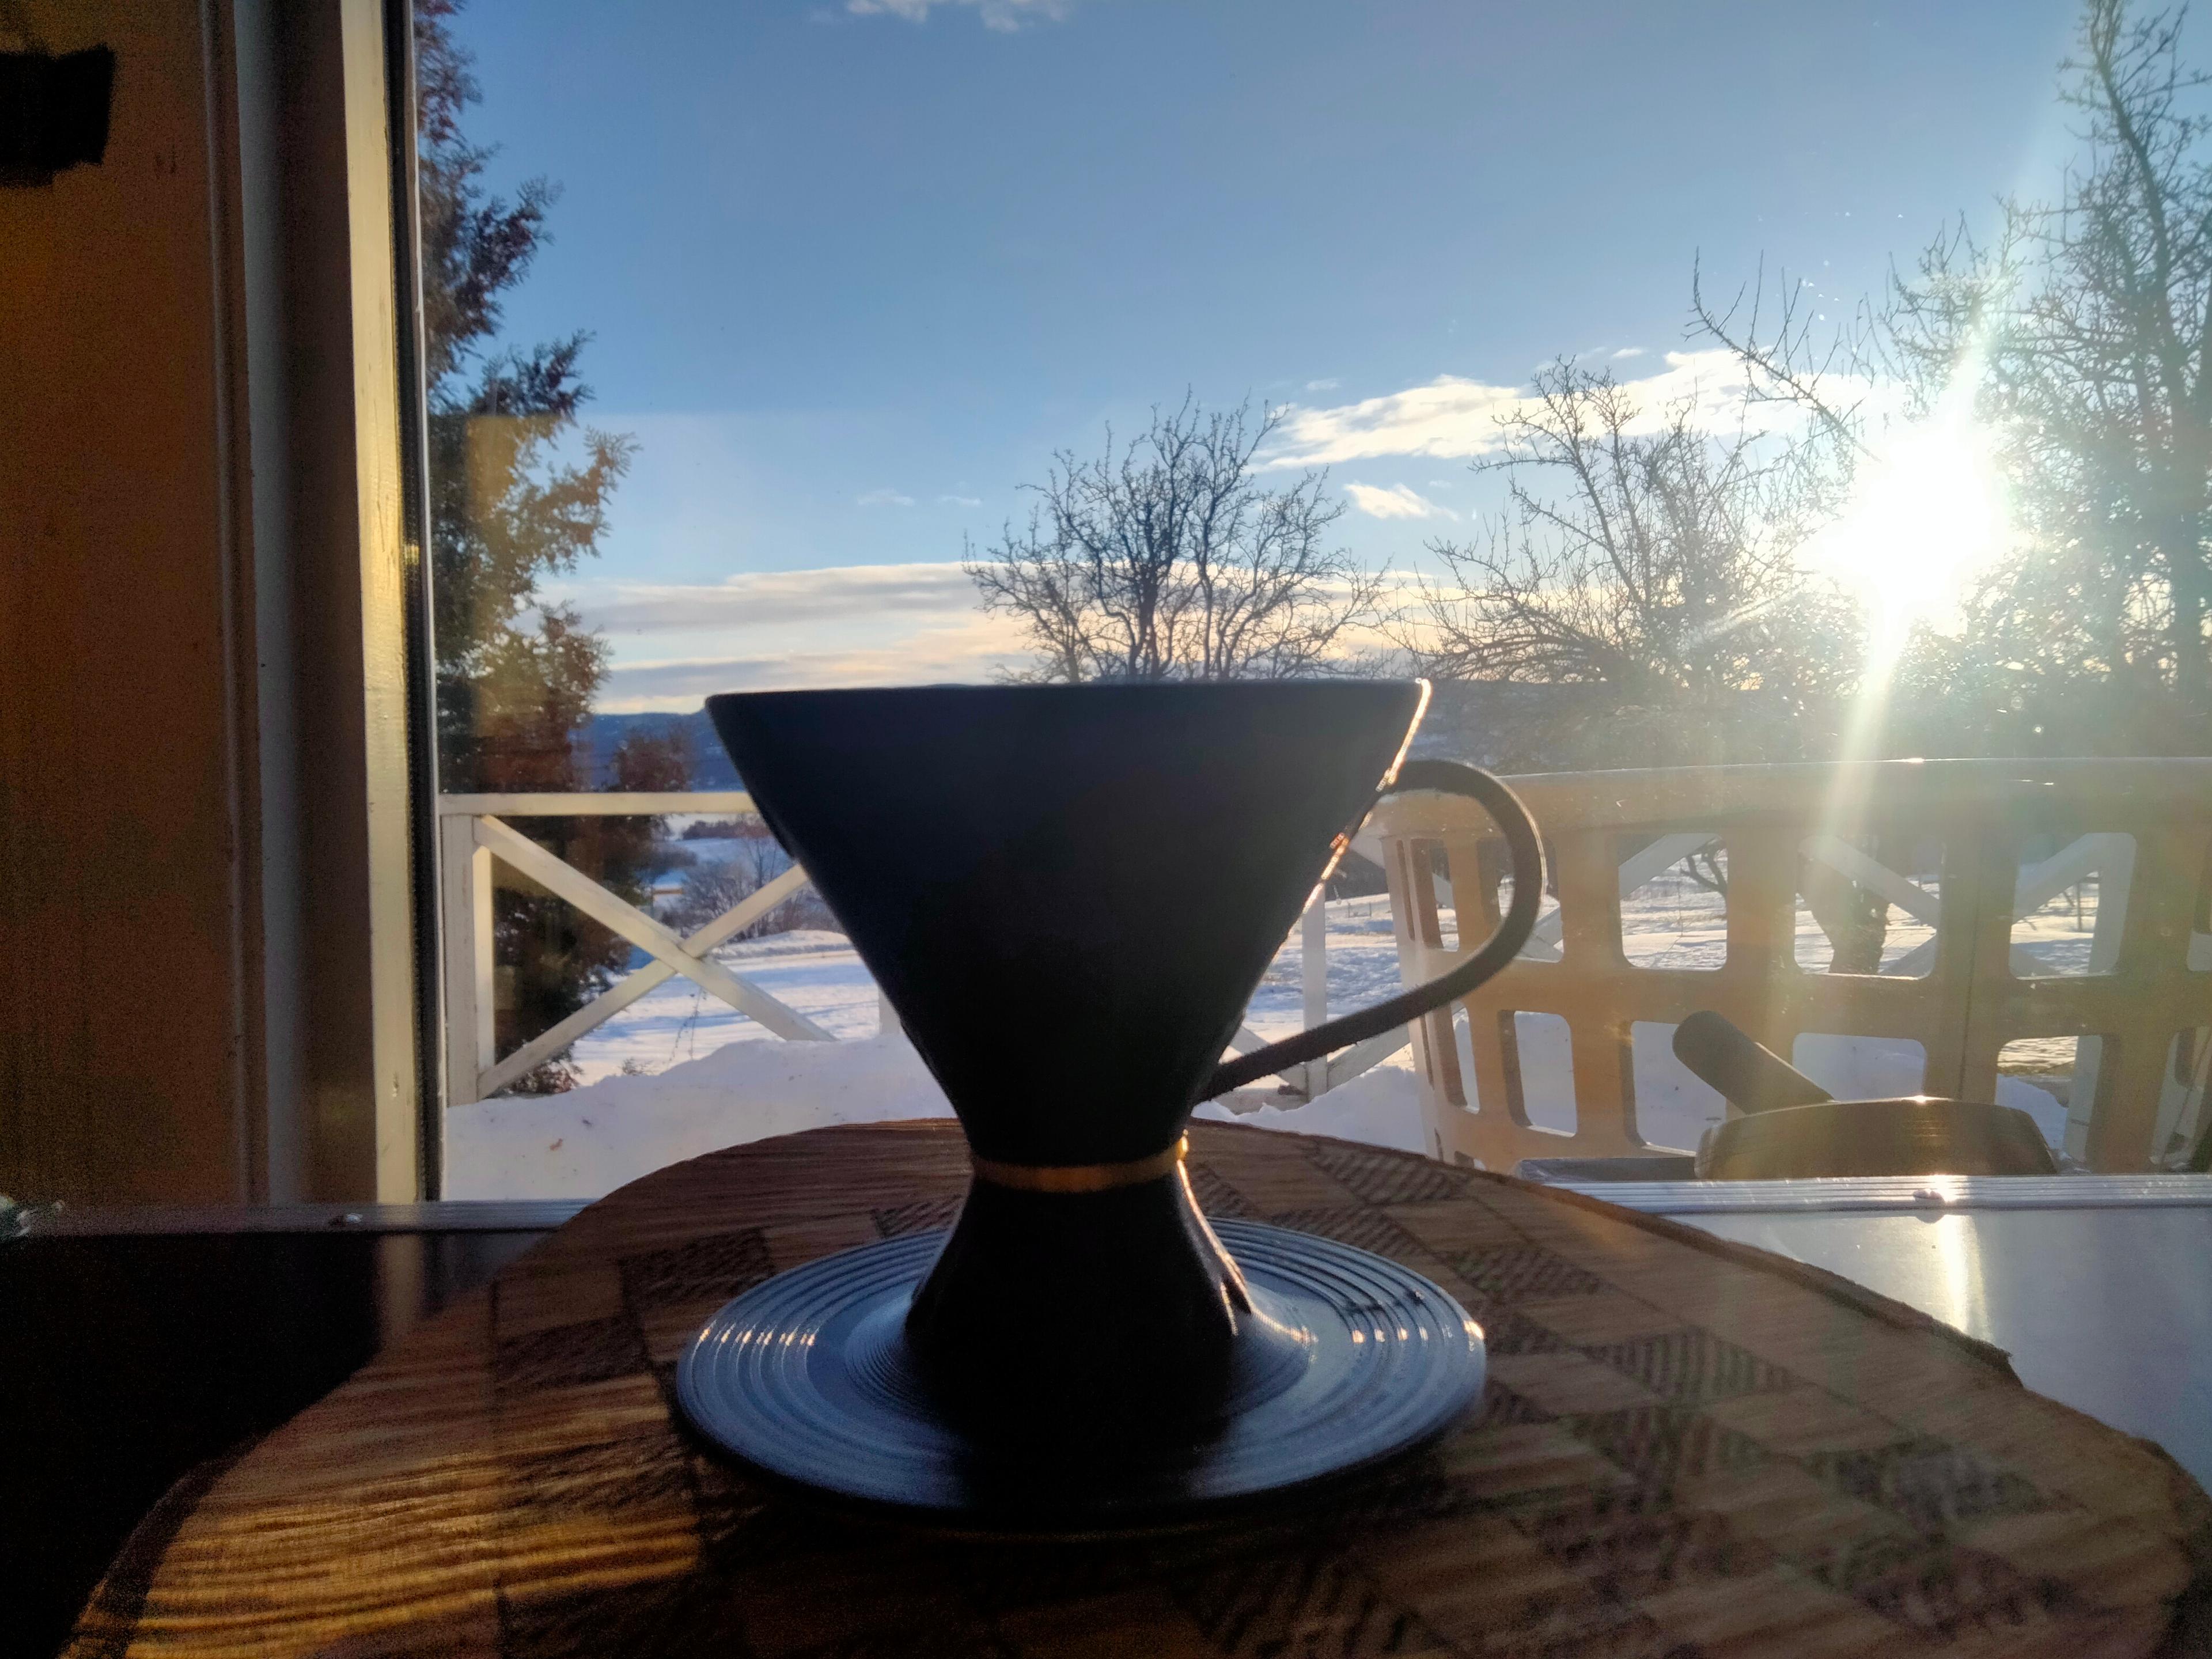 Coffee Dripper / Funnel 3d model